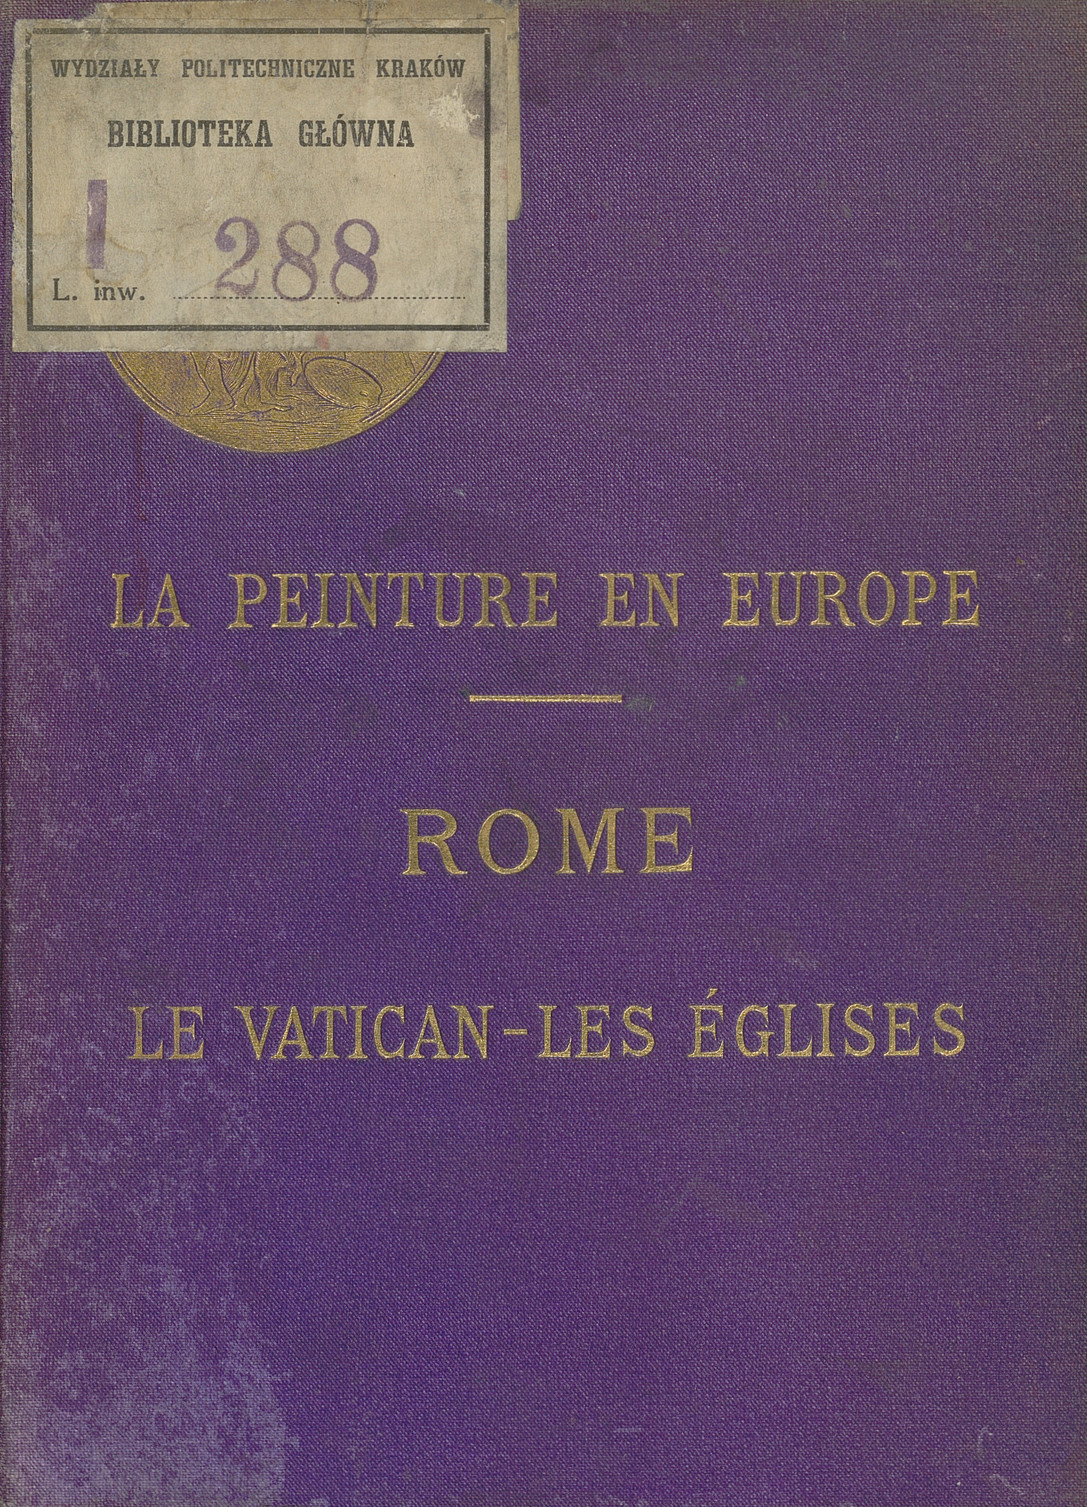 Rome. 1, Le Vatican - les Eglises